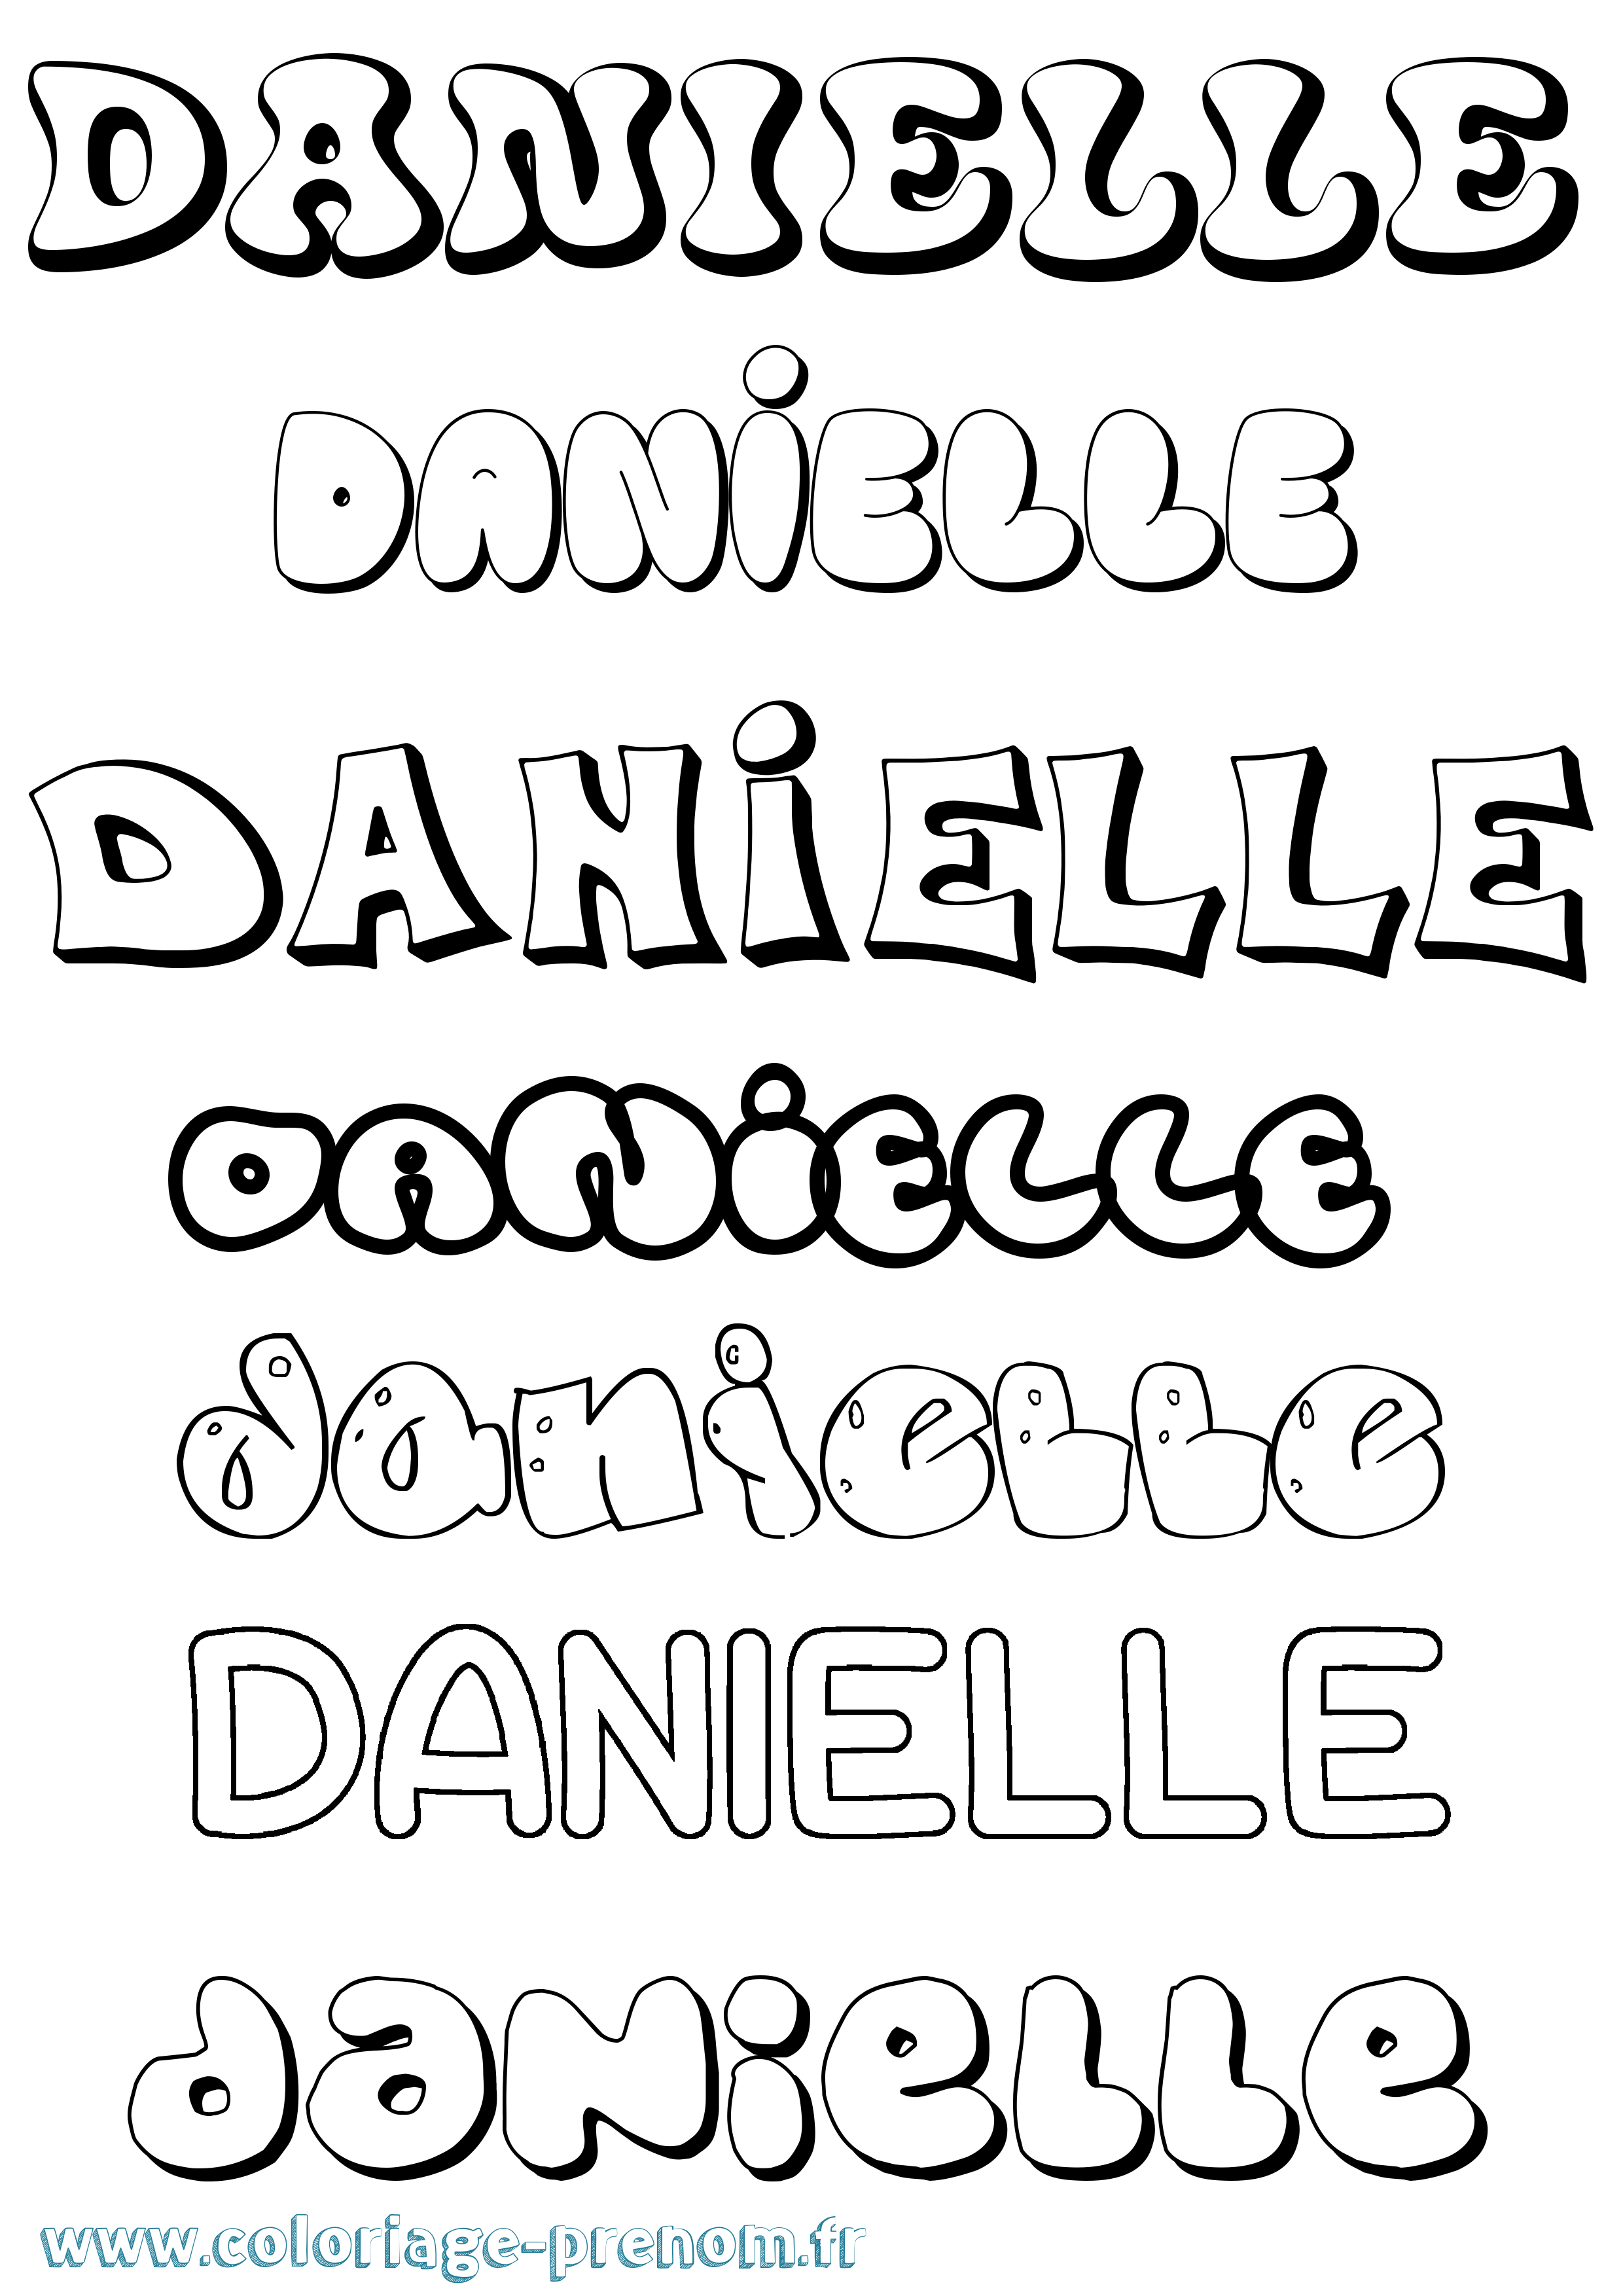 Coloriage prénom Danielle Bubble